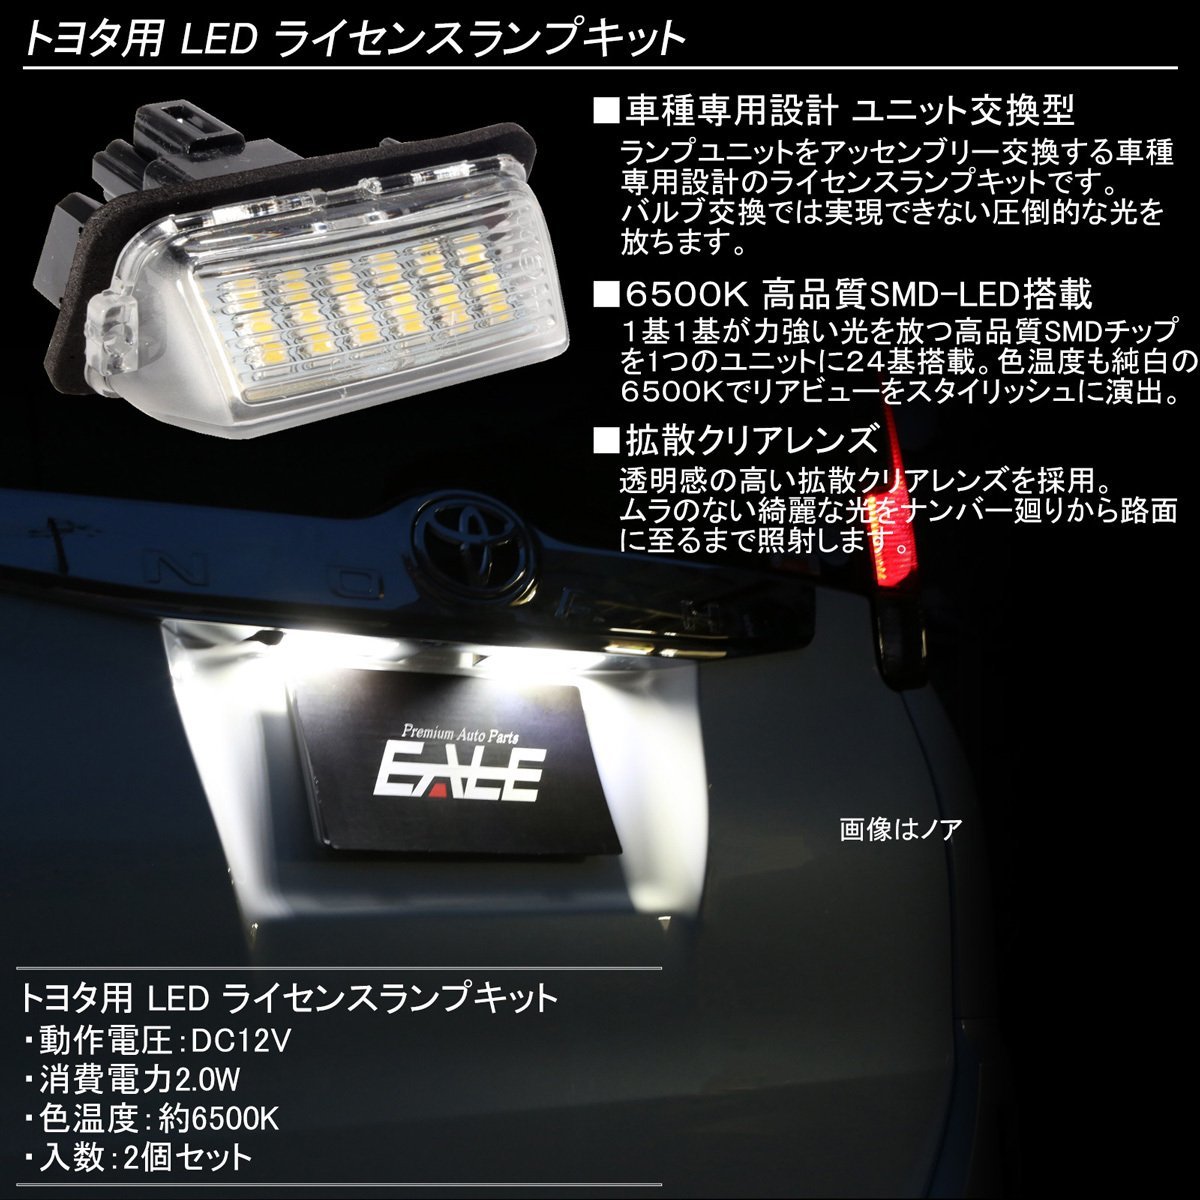 特価 80系 ヴォクシー ノア エスクァイア LED ライセンスランプ ナンバー灯 ハイブリッド対応 高輝度 ユニット交換タイプ R-208_画像2